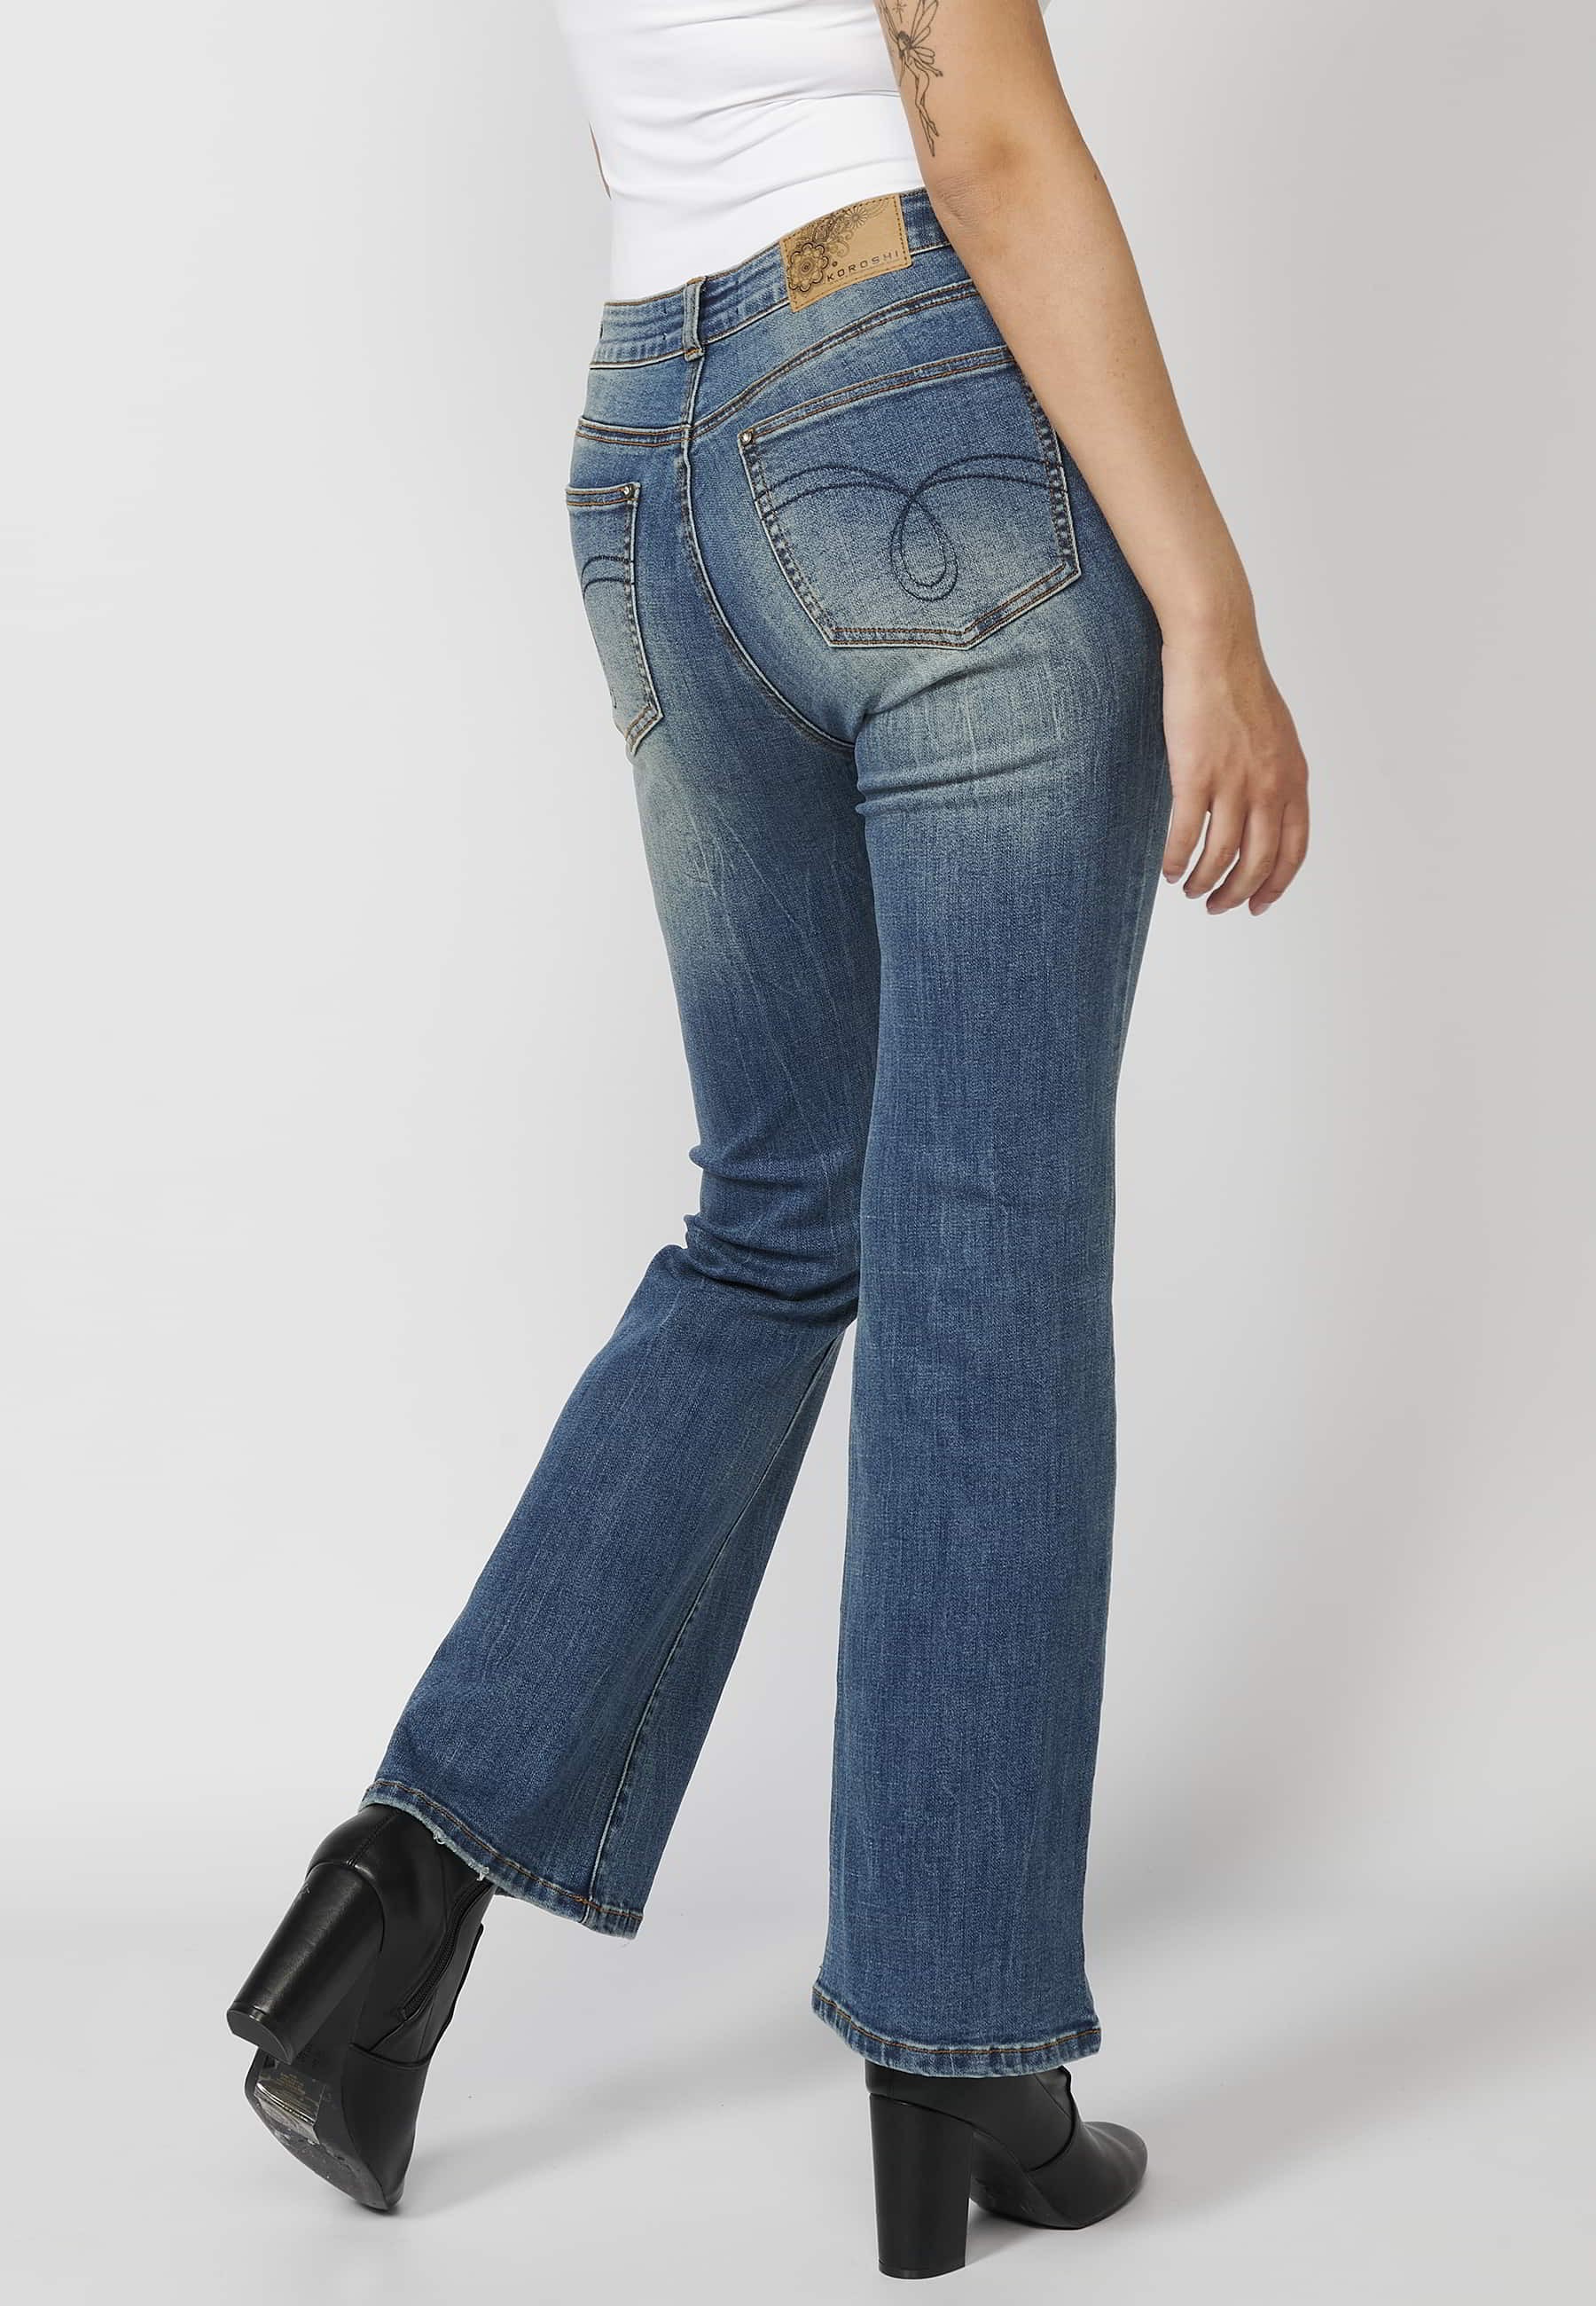 Pantalon long évasé en jean avec détails brodés dans les poches, coloris Bleu Foncé pour Femme